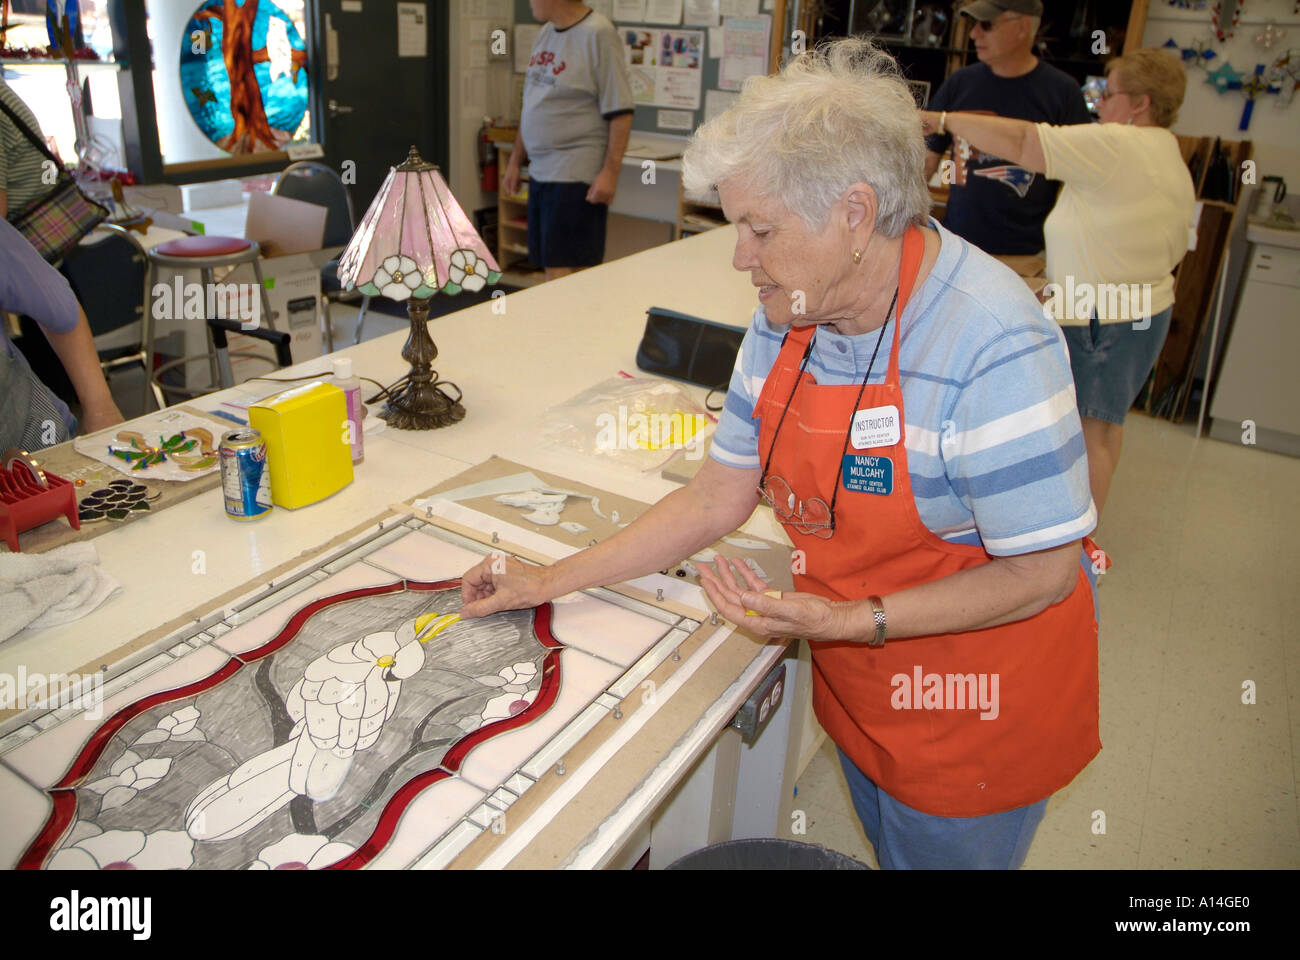 Sun City Center Florida una comunità di pensione per i cittadini anziani e baby boomer Foto Stock